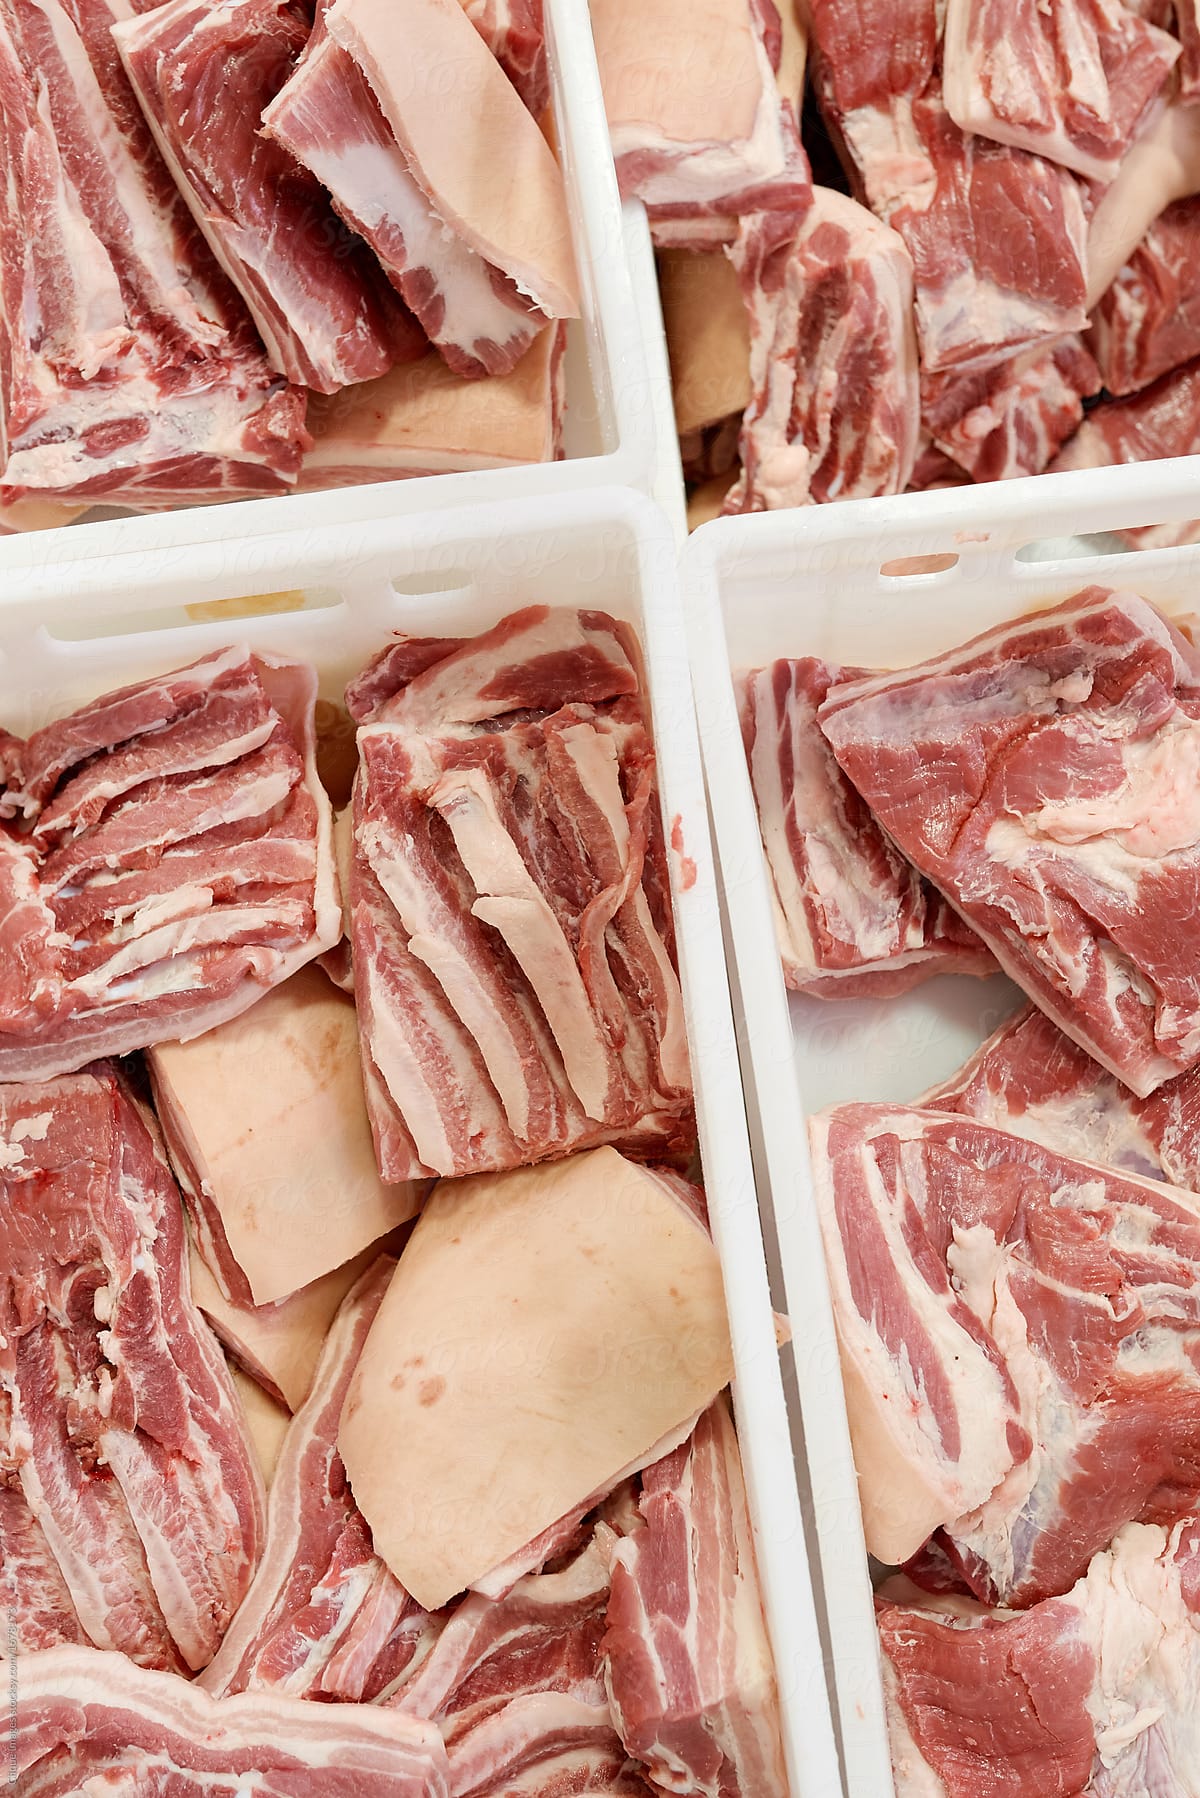 Pork cuts prepared for sale